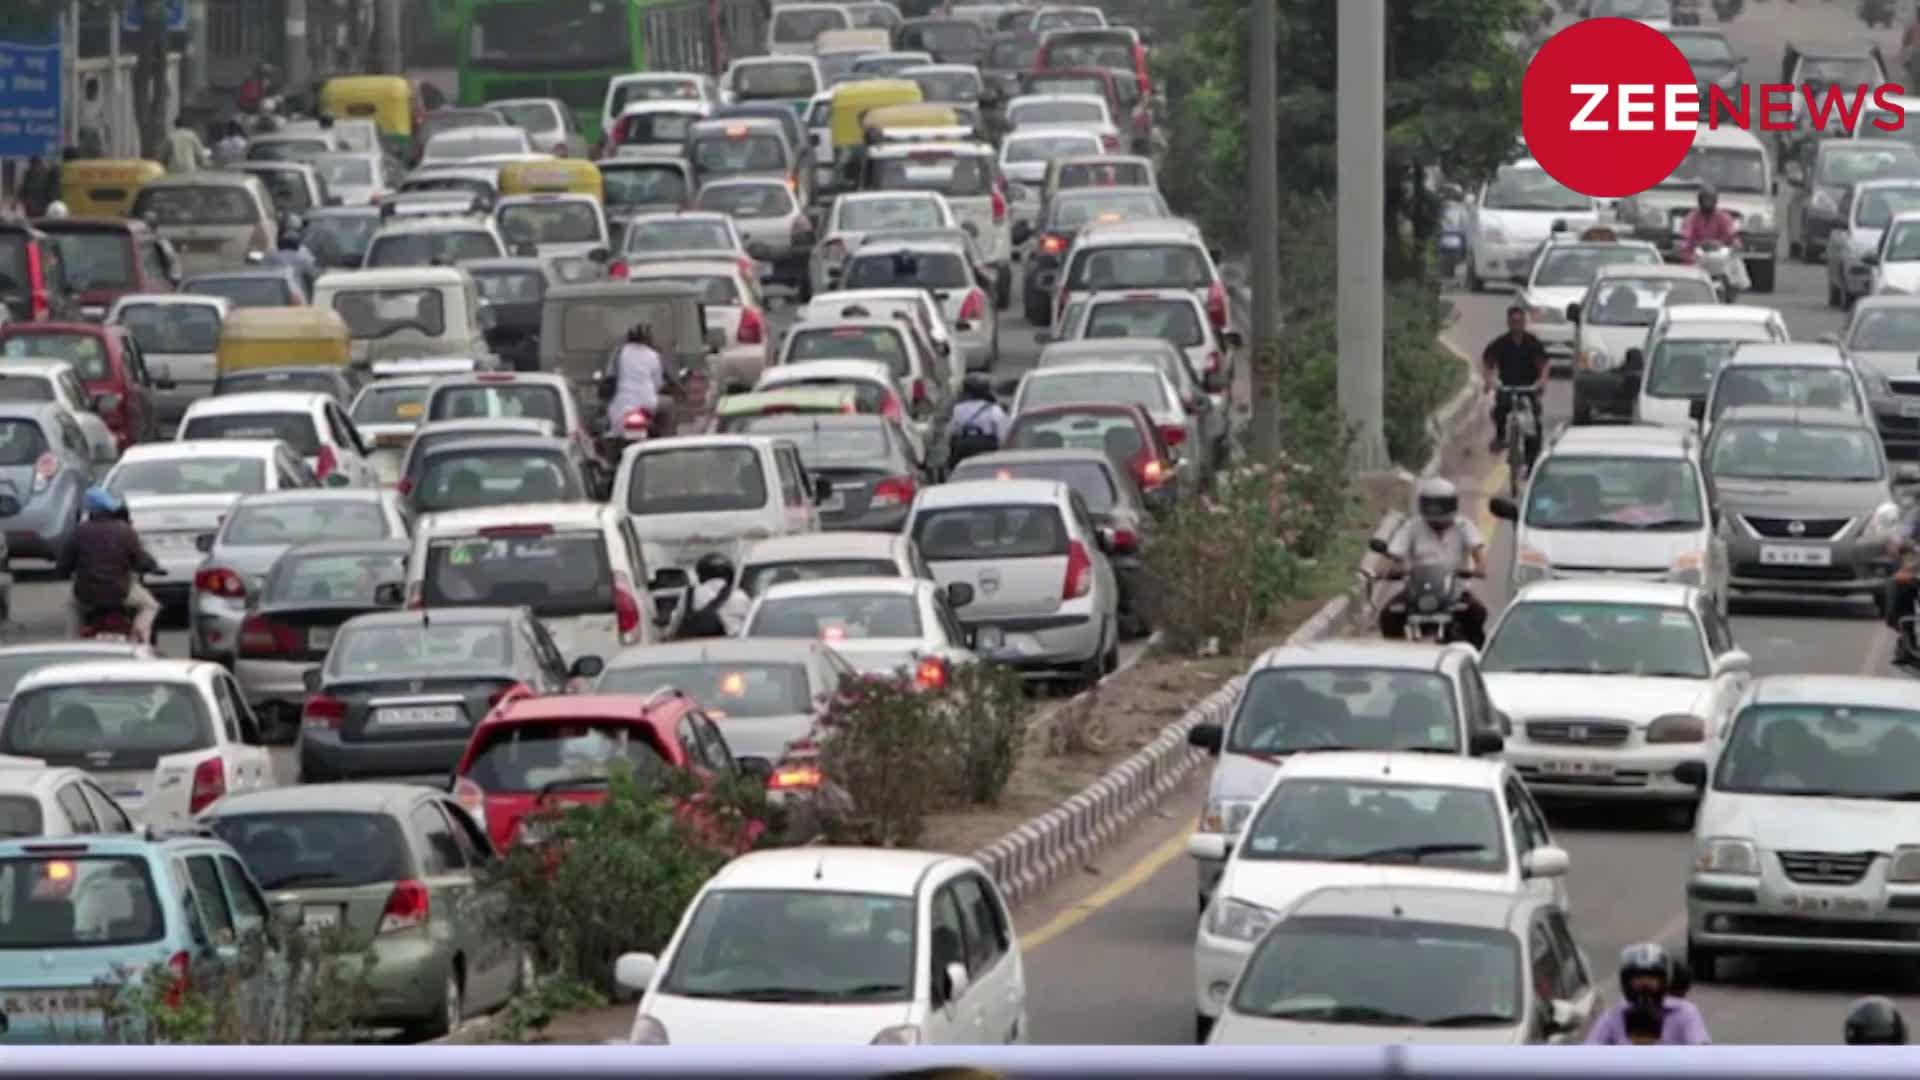 Nitin Gadkari: न‍ित‍िन गडकरी ट्रैफ‍िक और प्रदूषण कम करने के ल‍िए बना रहे हैं एक खास योजना, जानिए क्या है ये योजना